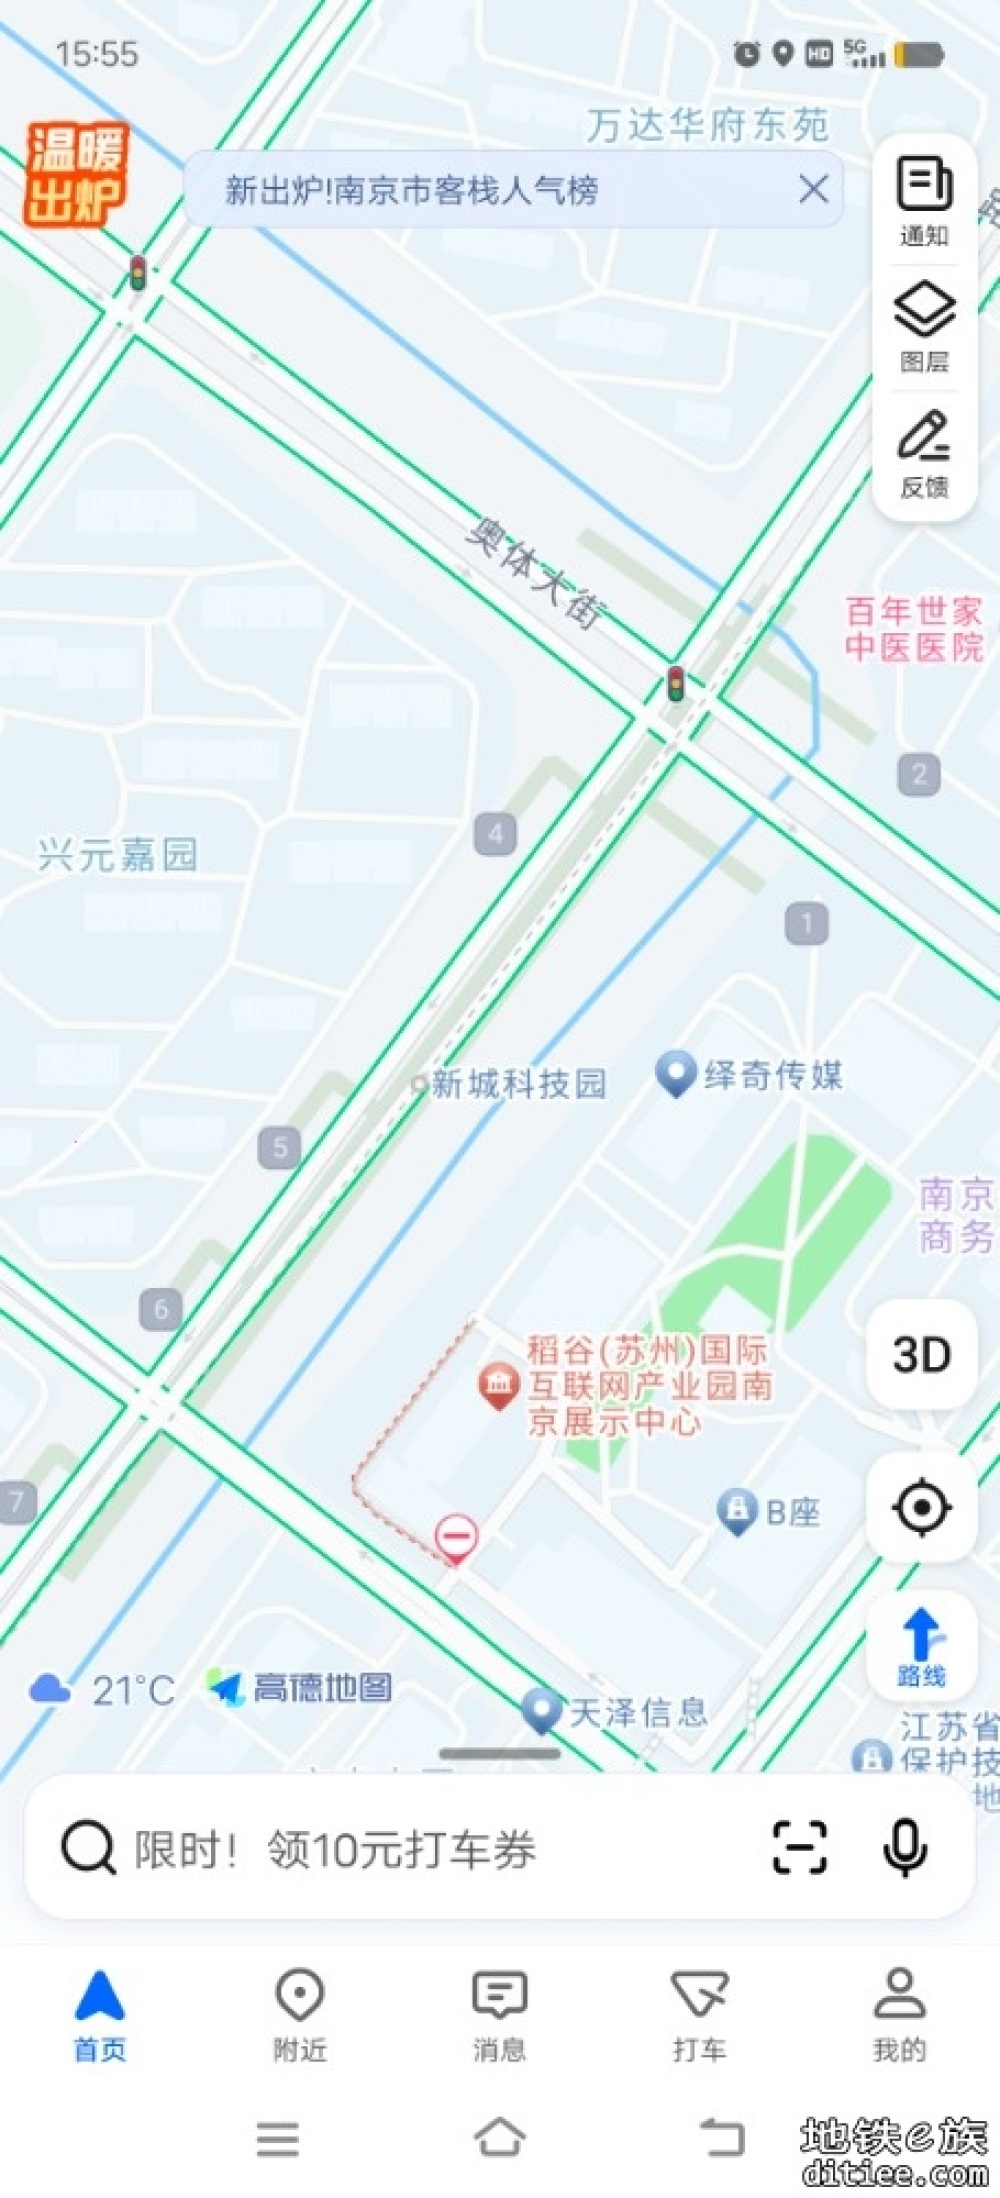 南京地铁7号线南段在电子地图上已有显示